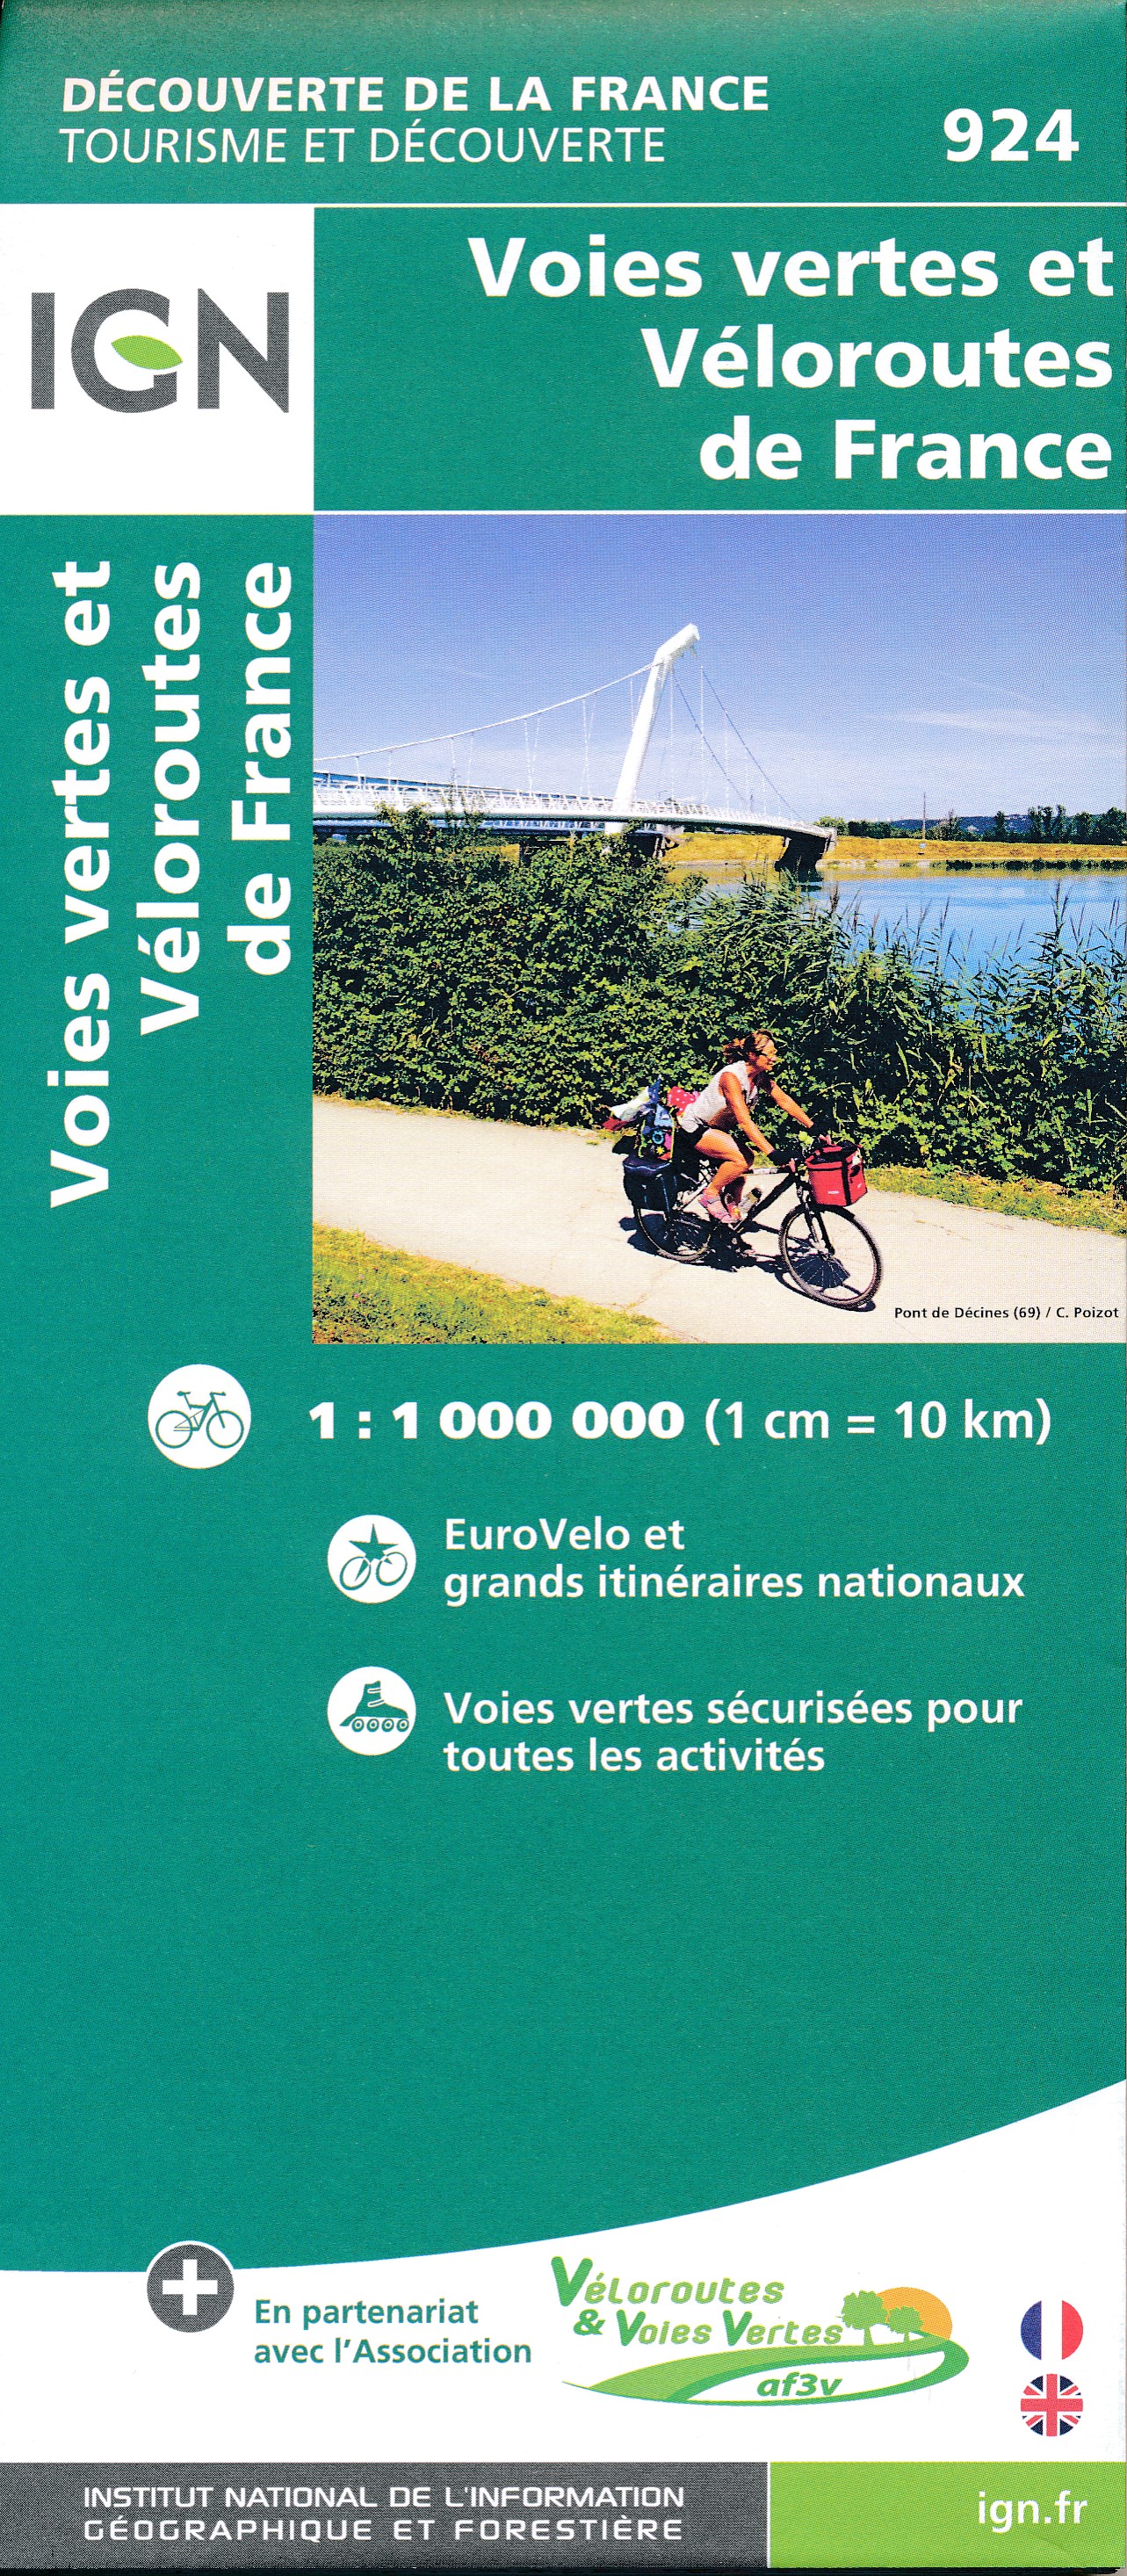 Online bestellen: Fietskaart 924 Frankrijk - Voies Vertes & véloroutes | IGN - Institut Géographique National